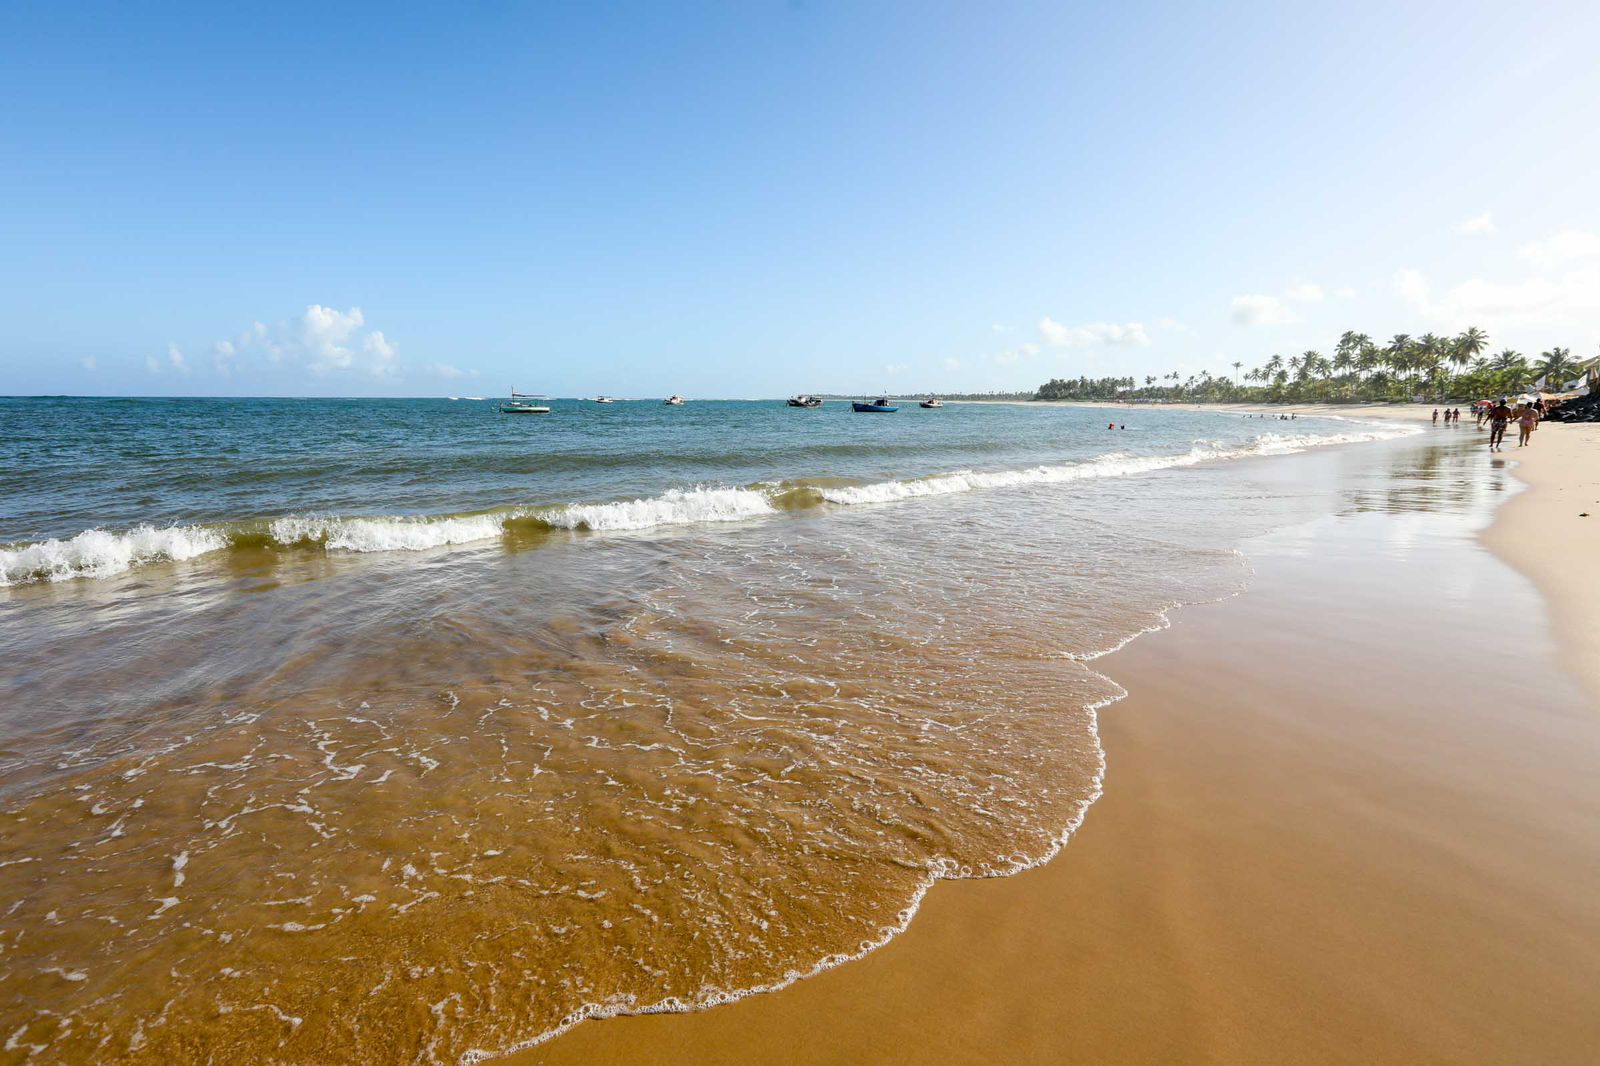 Operação limpeza: Guarajuba realiza ação ambiental em suas praias. Foto: divulgação